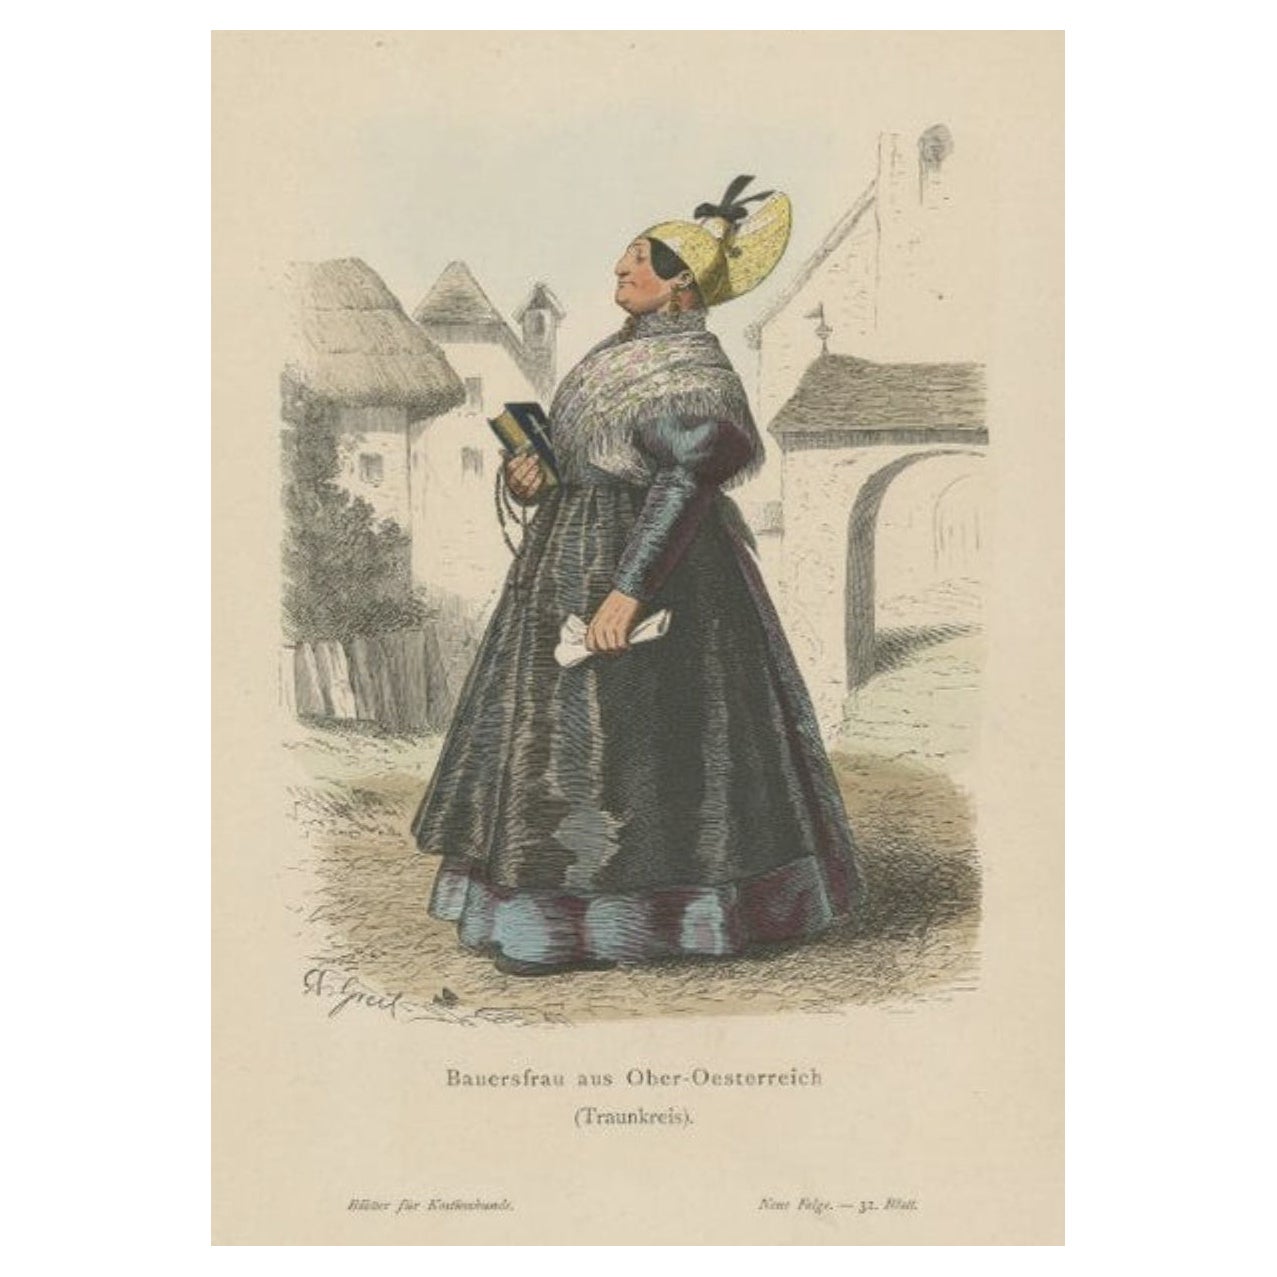 Ancienne estampe de costume d'une femme fermier de la région de Traunkreis, vers 1880